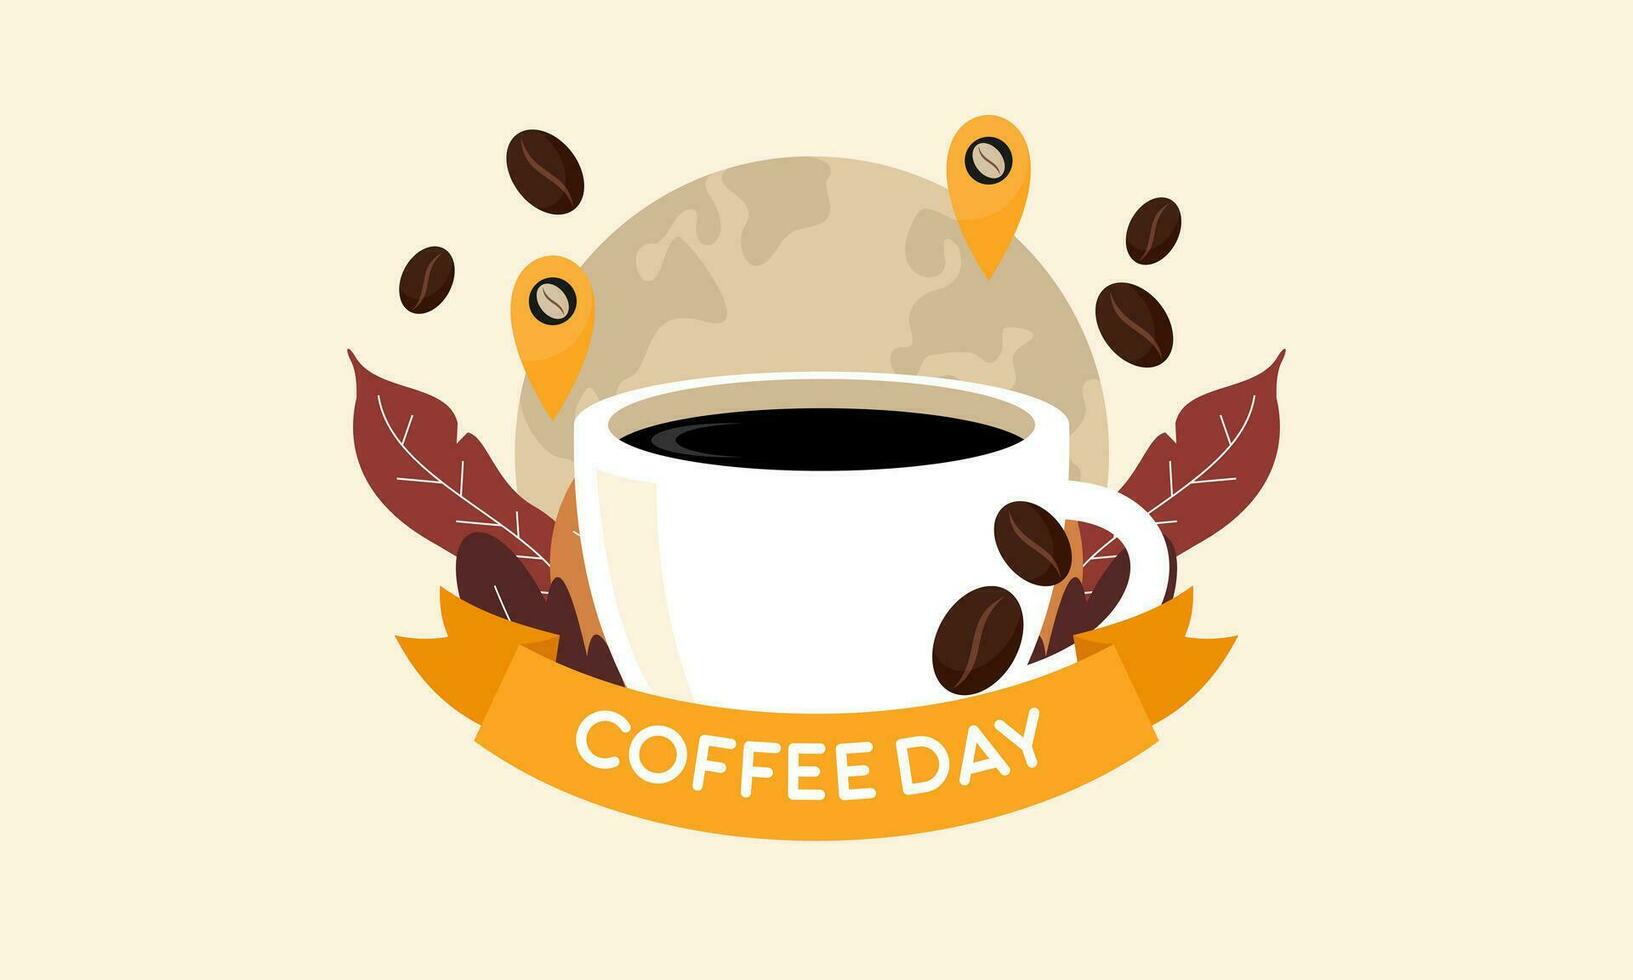 Internationale dag van koffie illustratie hand- getrokken vector